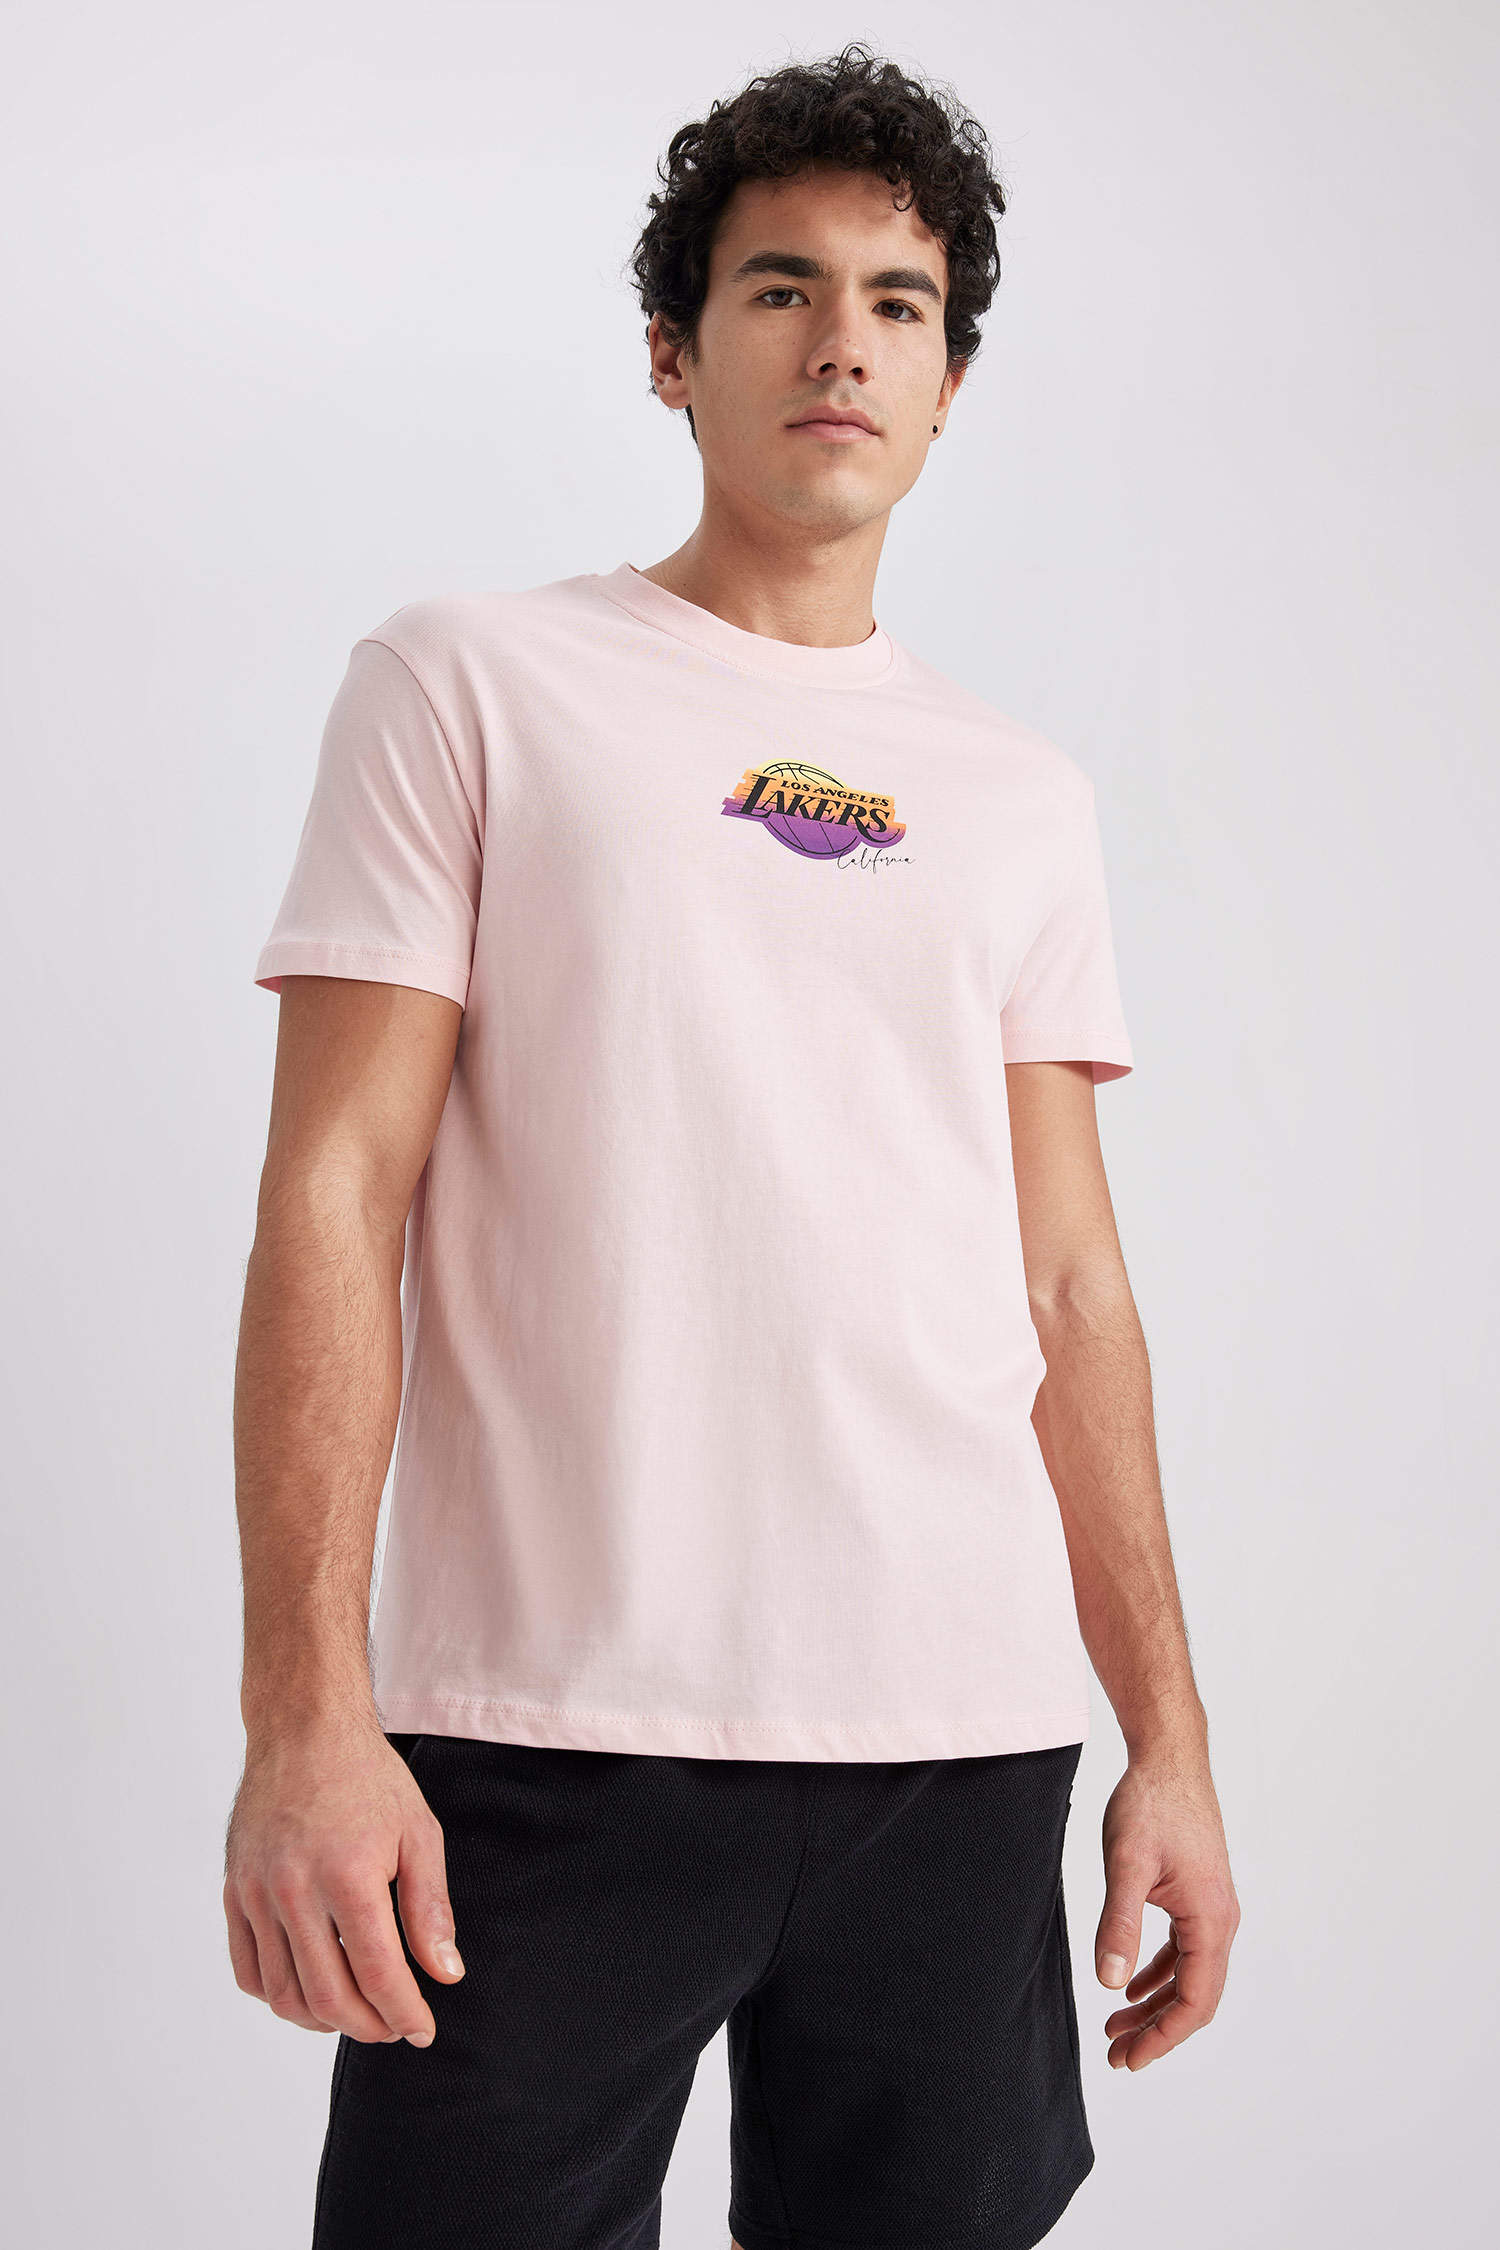 pink lakers shirt